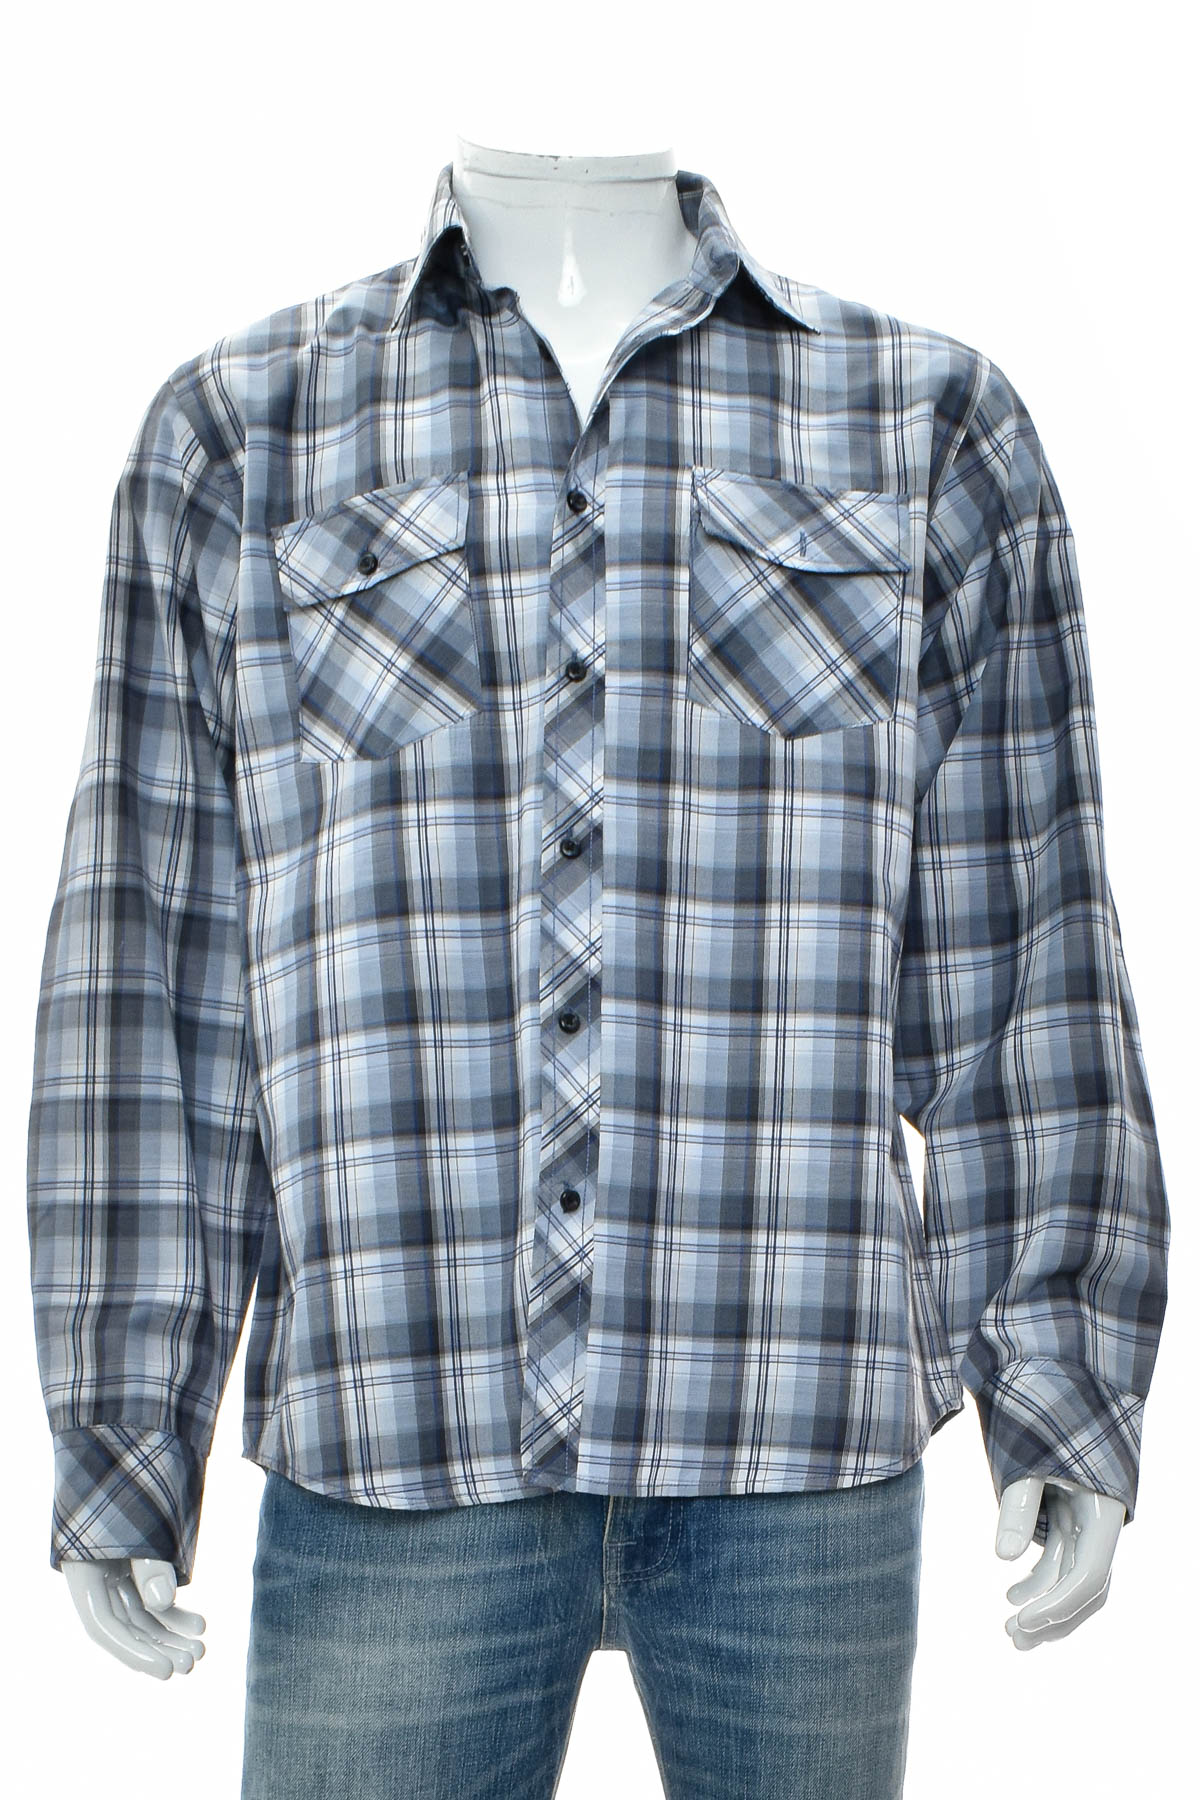 Ανδρικό πουκάμισο - LEVEL T.E.N - 0